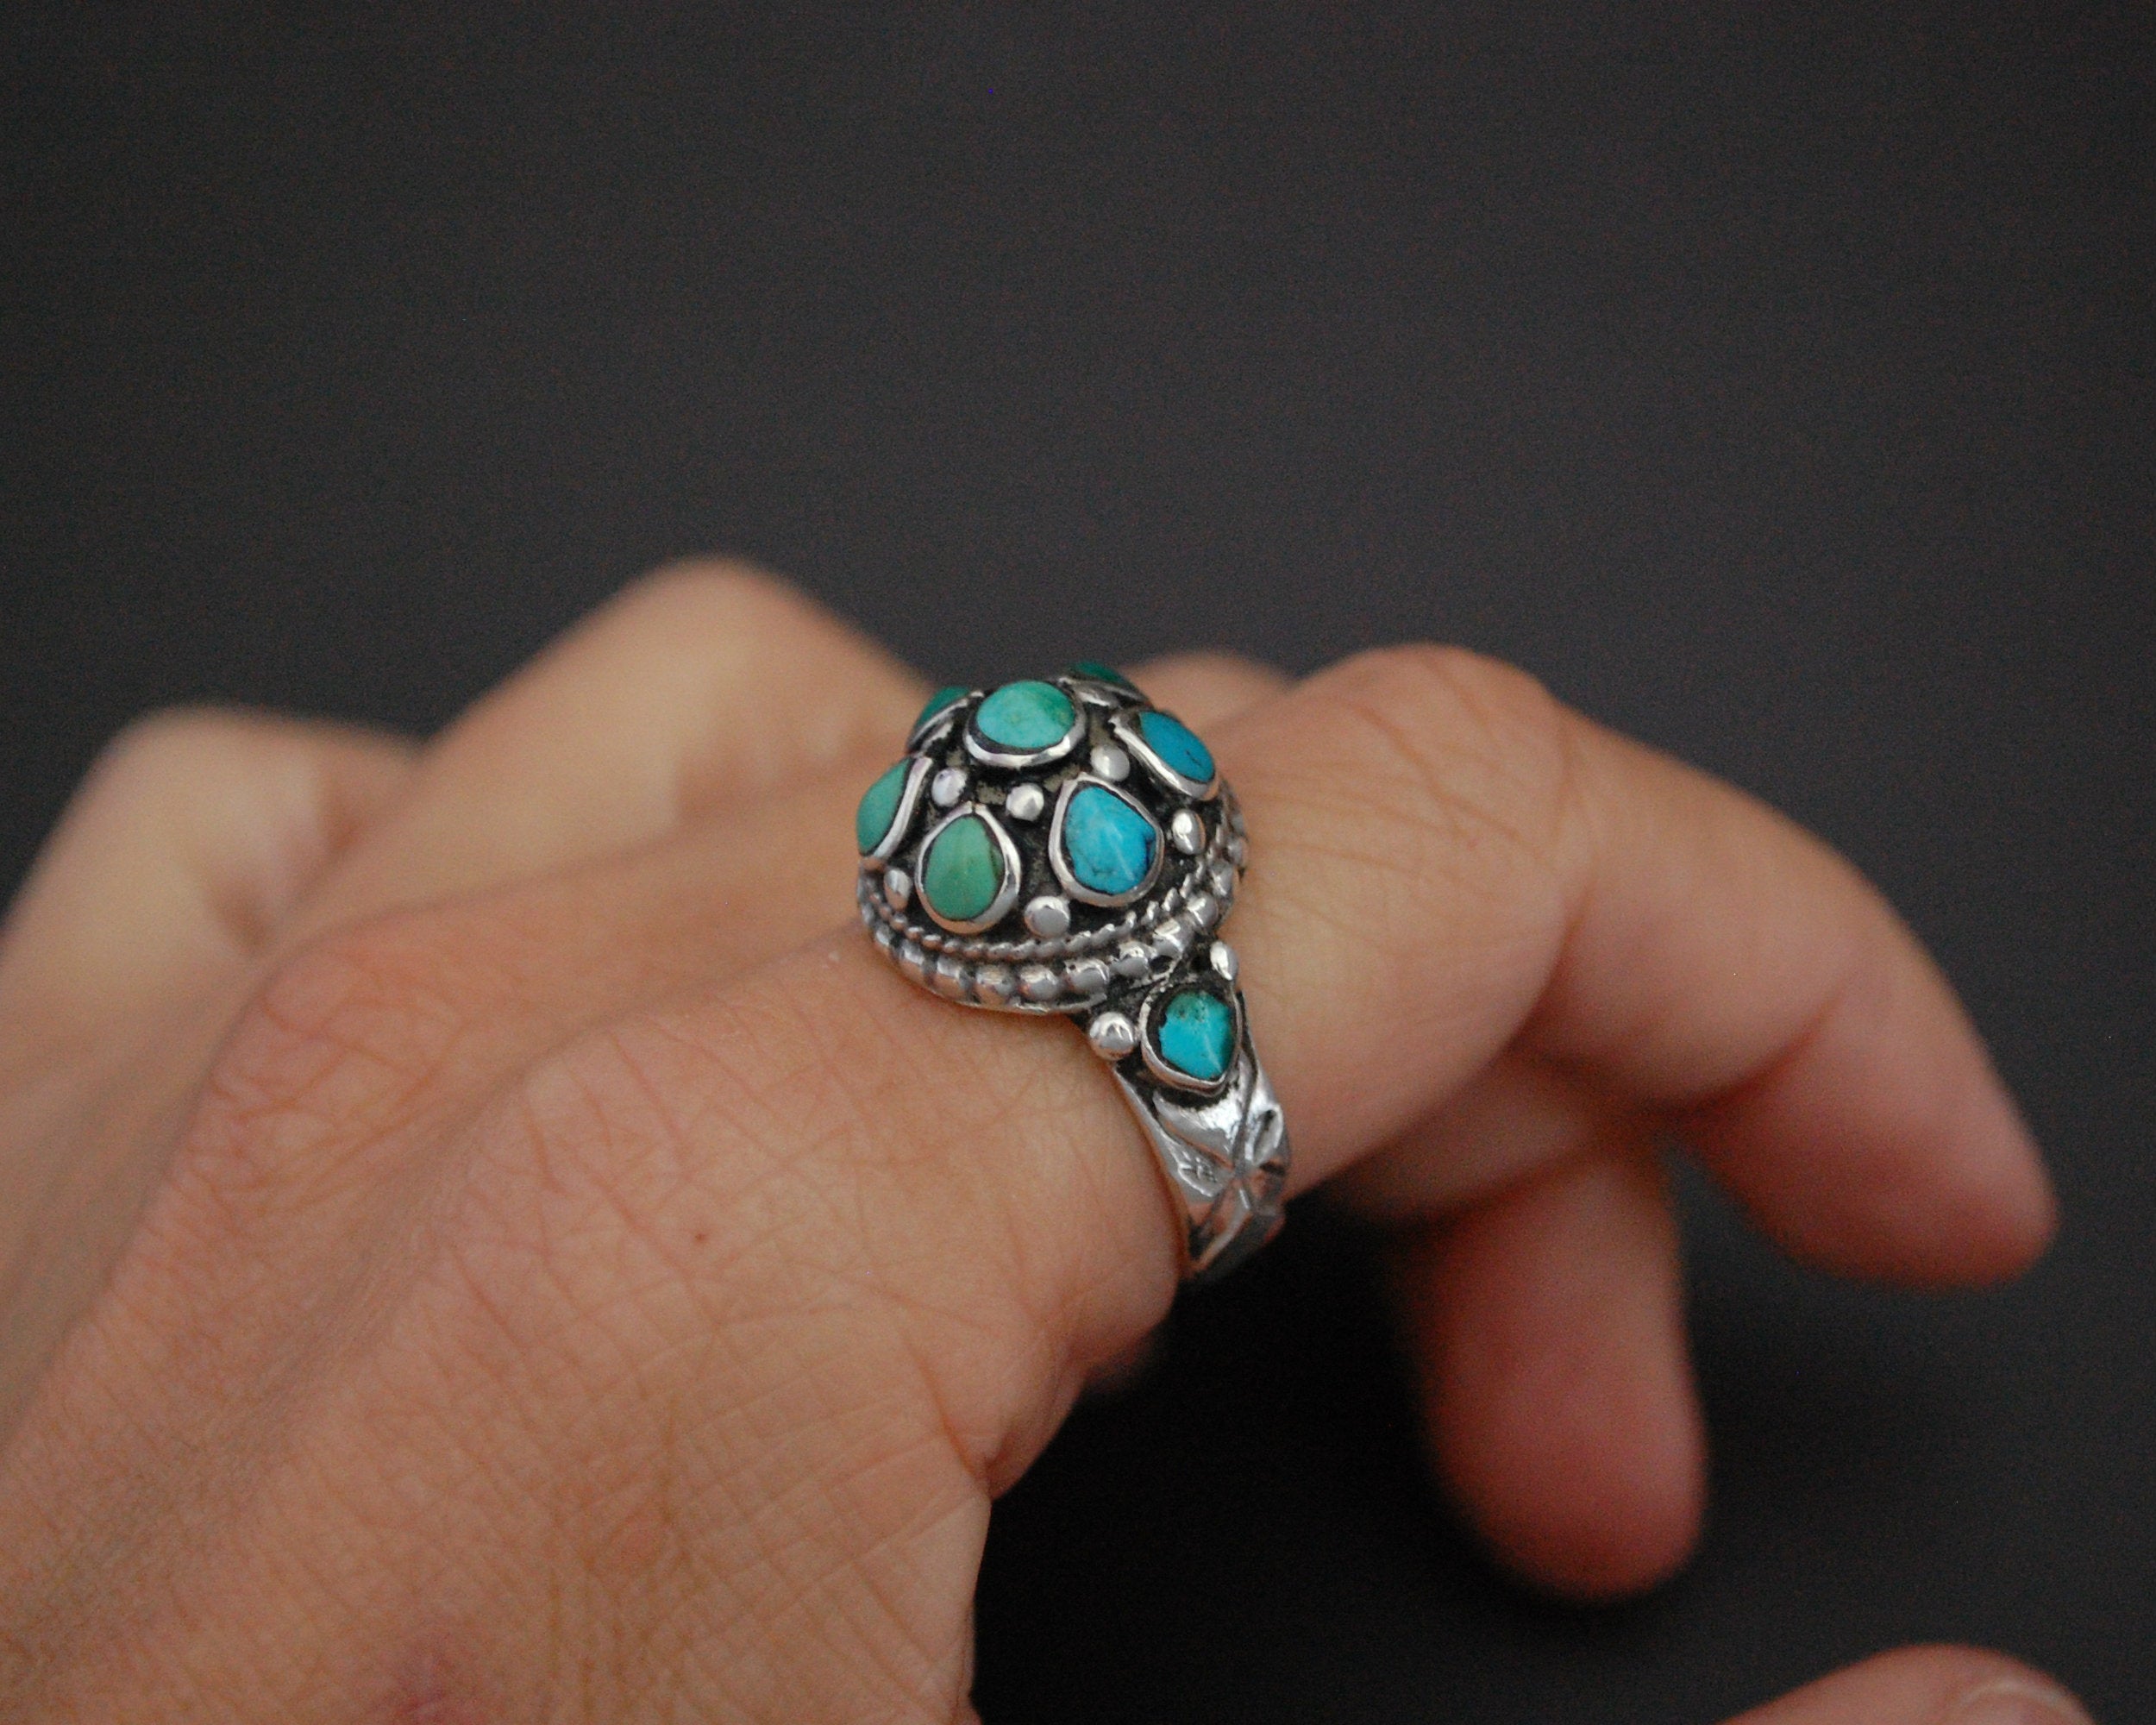 Ladakh Turquoise Ring - Size 8.5